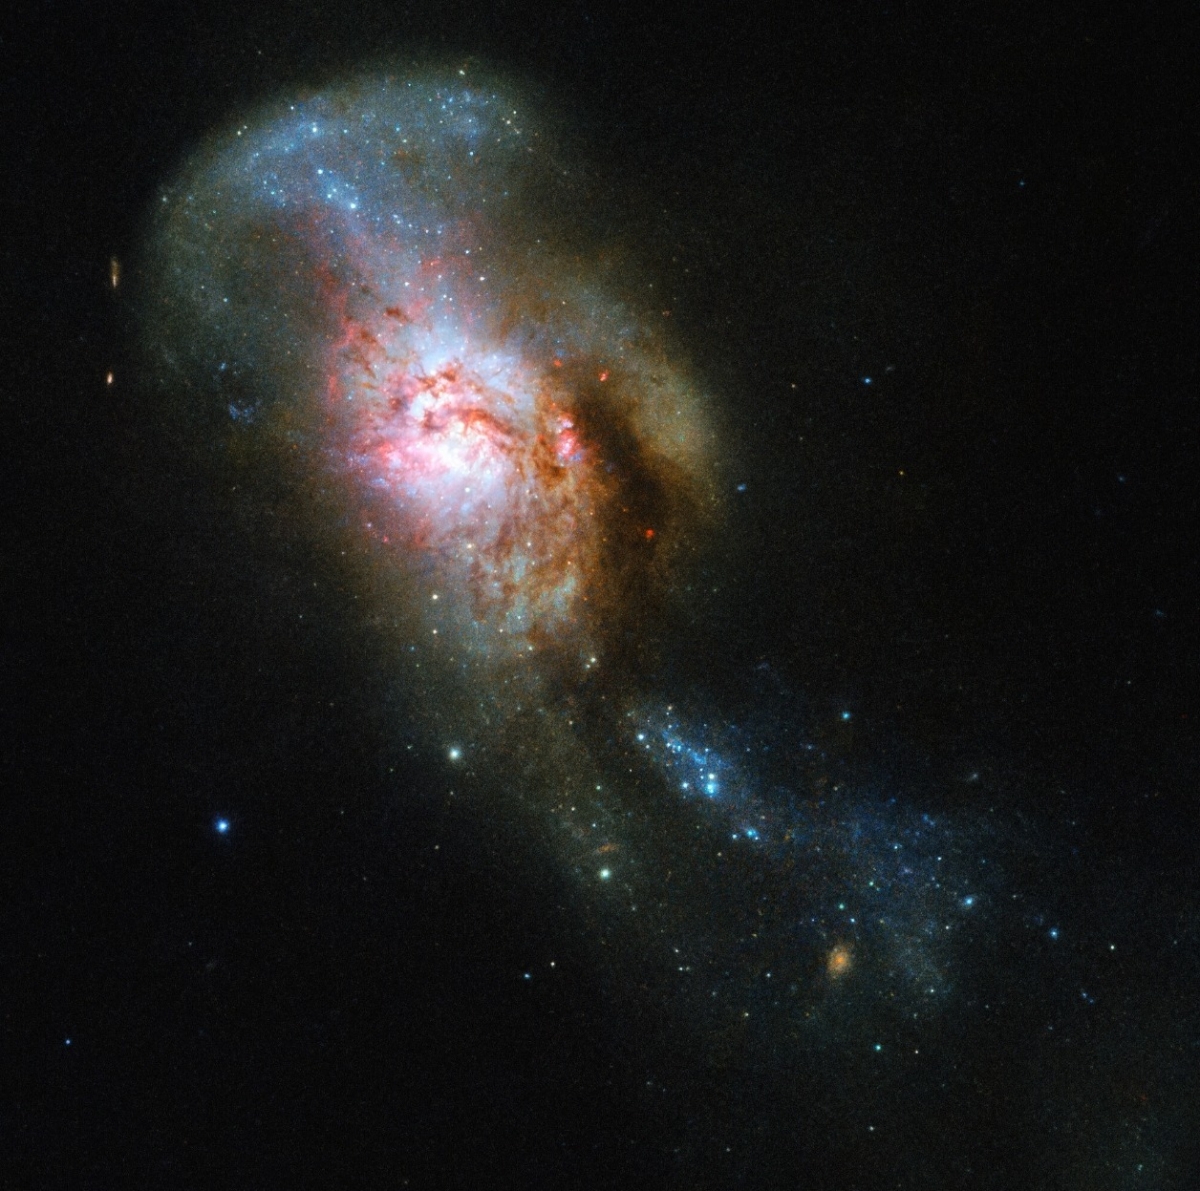 Kính thiên văn Hubble đã ghi lại hình ảnh cuộc sáp nhập Medusa với một cặp thiên hà tương tác với nhau trong chòm sao Đại Hùng. Trung tâm của nó, được gọi là Con mắt Medusa là một khu vực giàu khí trải dài trên 500 năm ánh sáng.